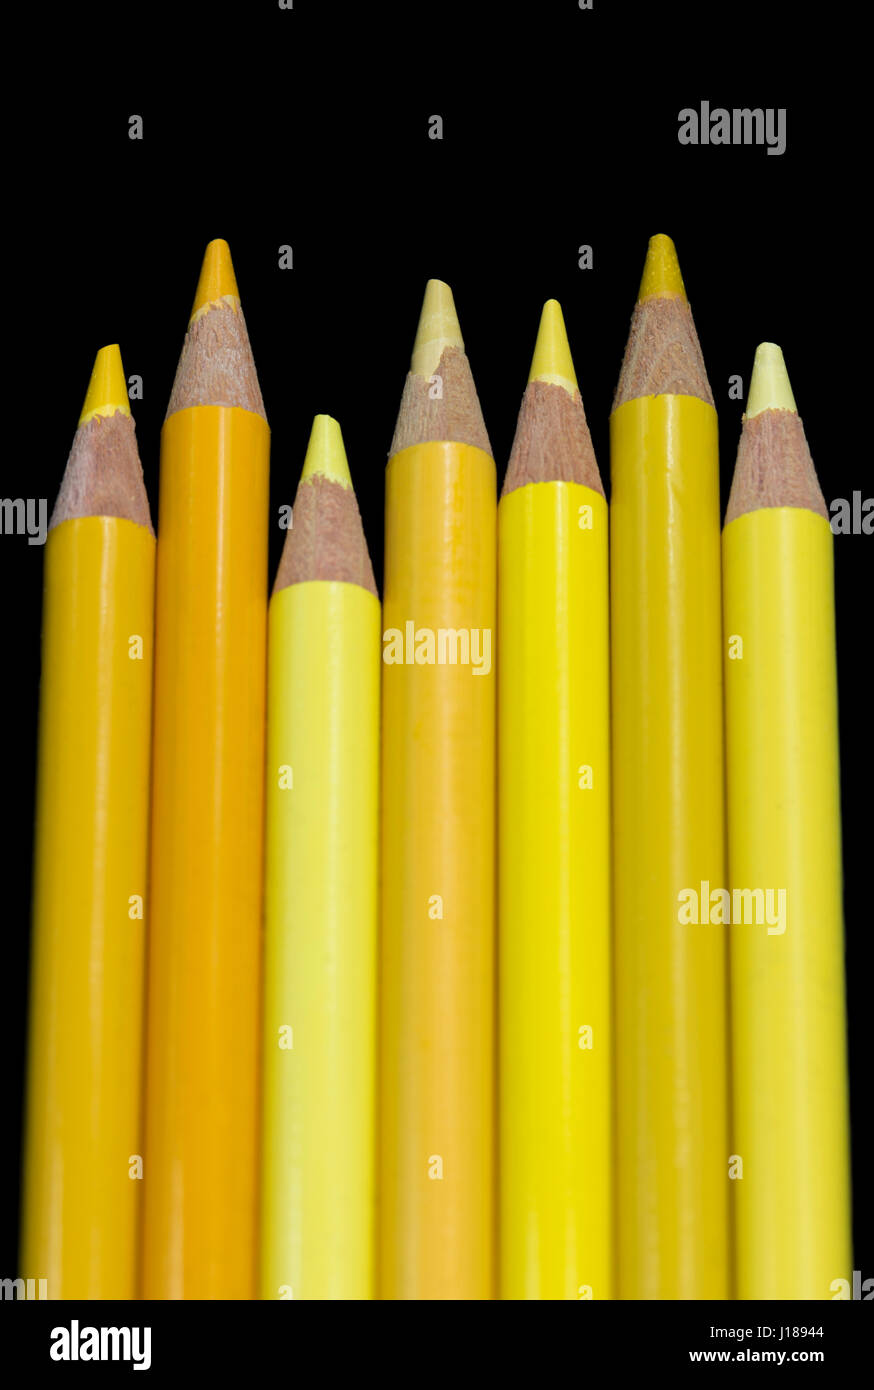 7 crayons de couleur jaune de toutes les différentes nuances et teintes de jaune, alignés côte à côte avec des points vers le haut. Mode Portrait avec un noir foncé backgrou Banque D'Images